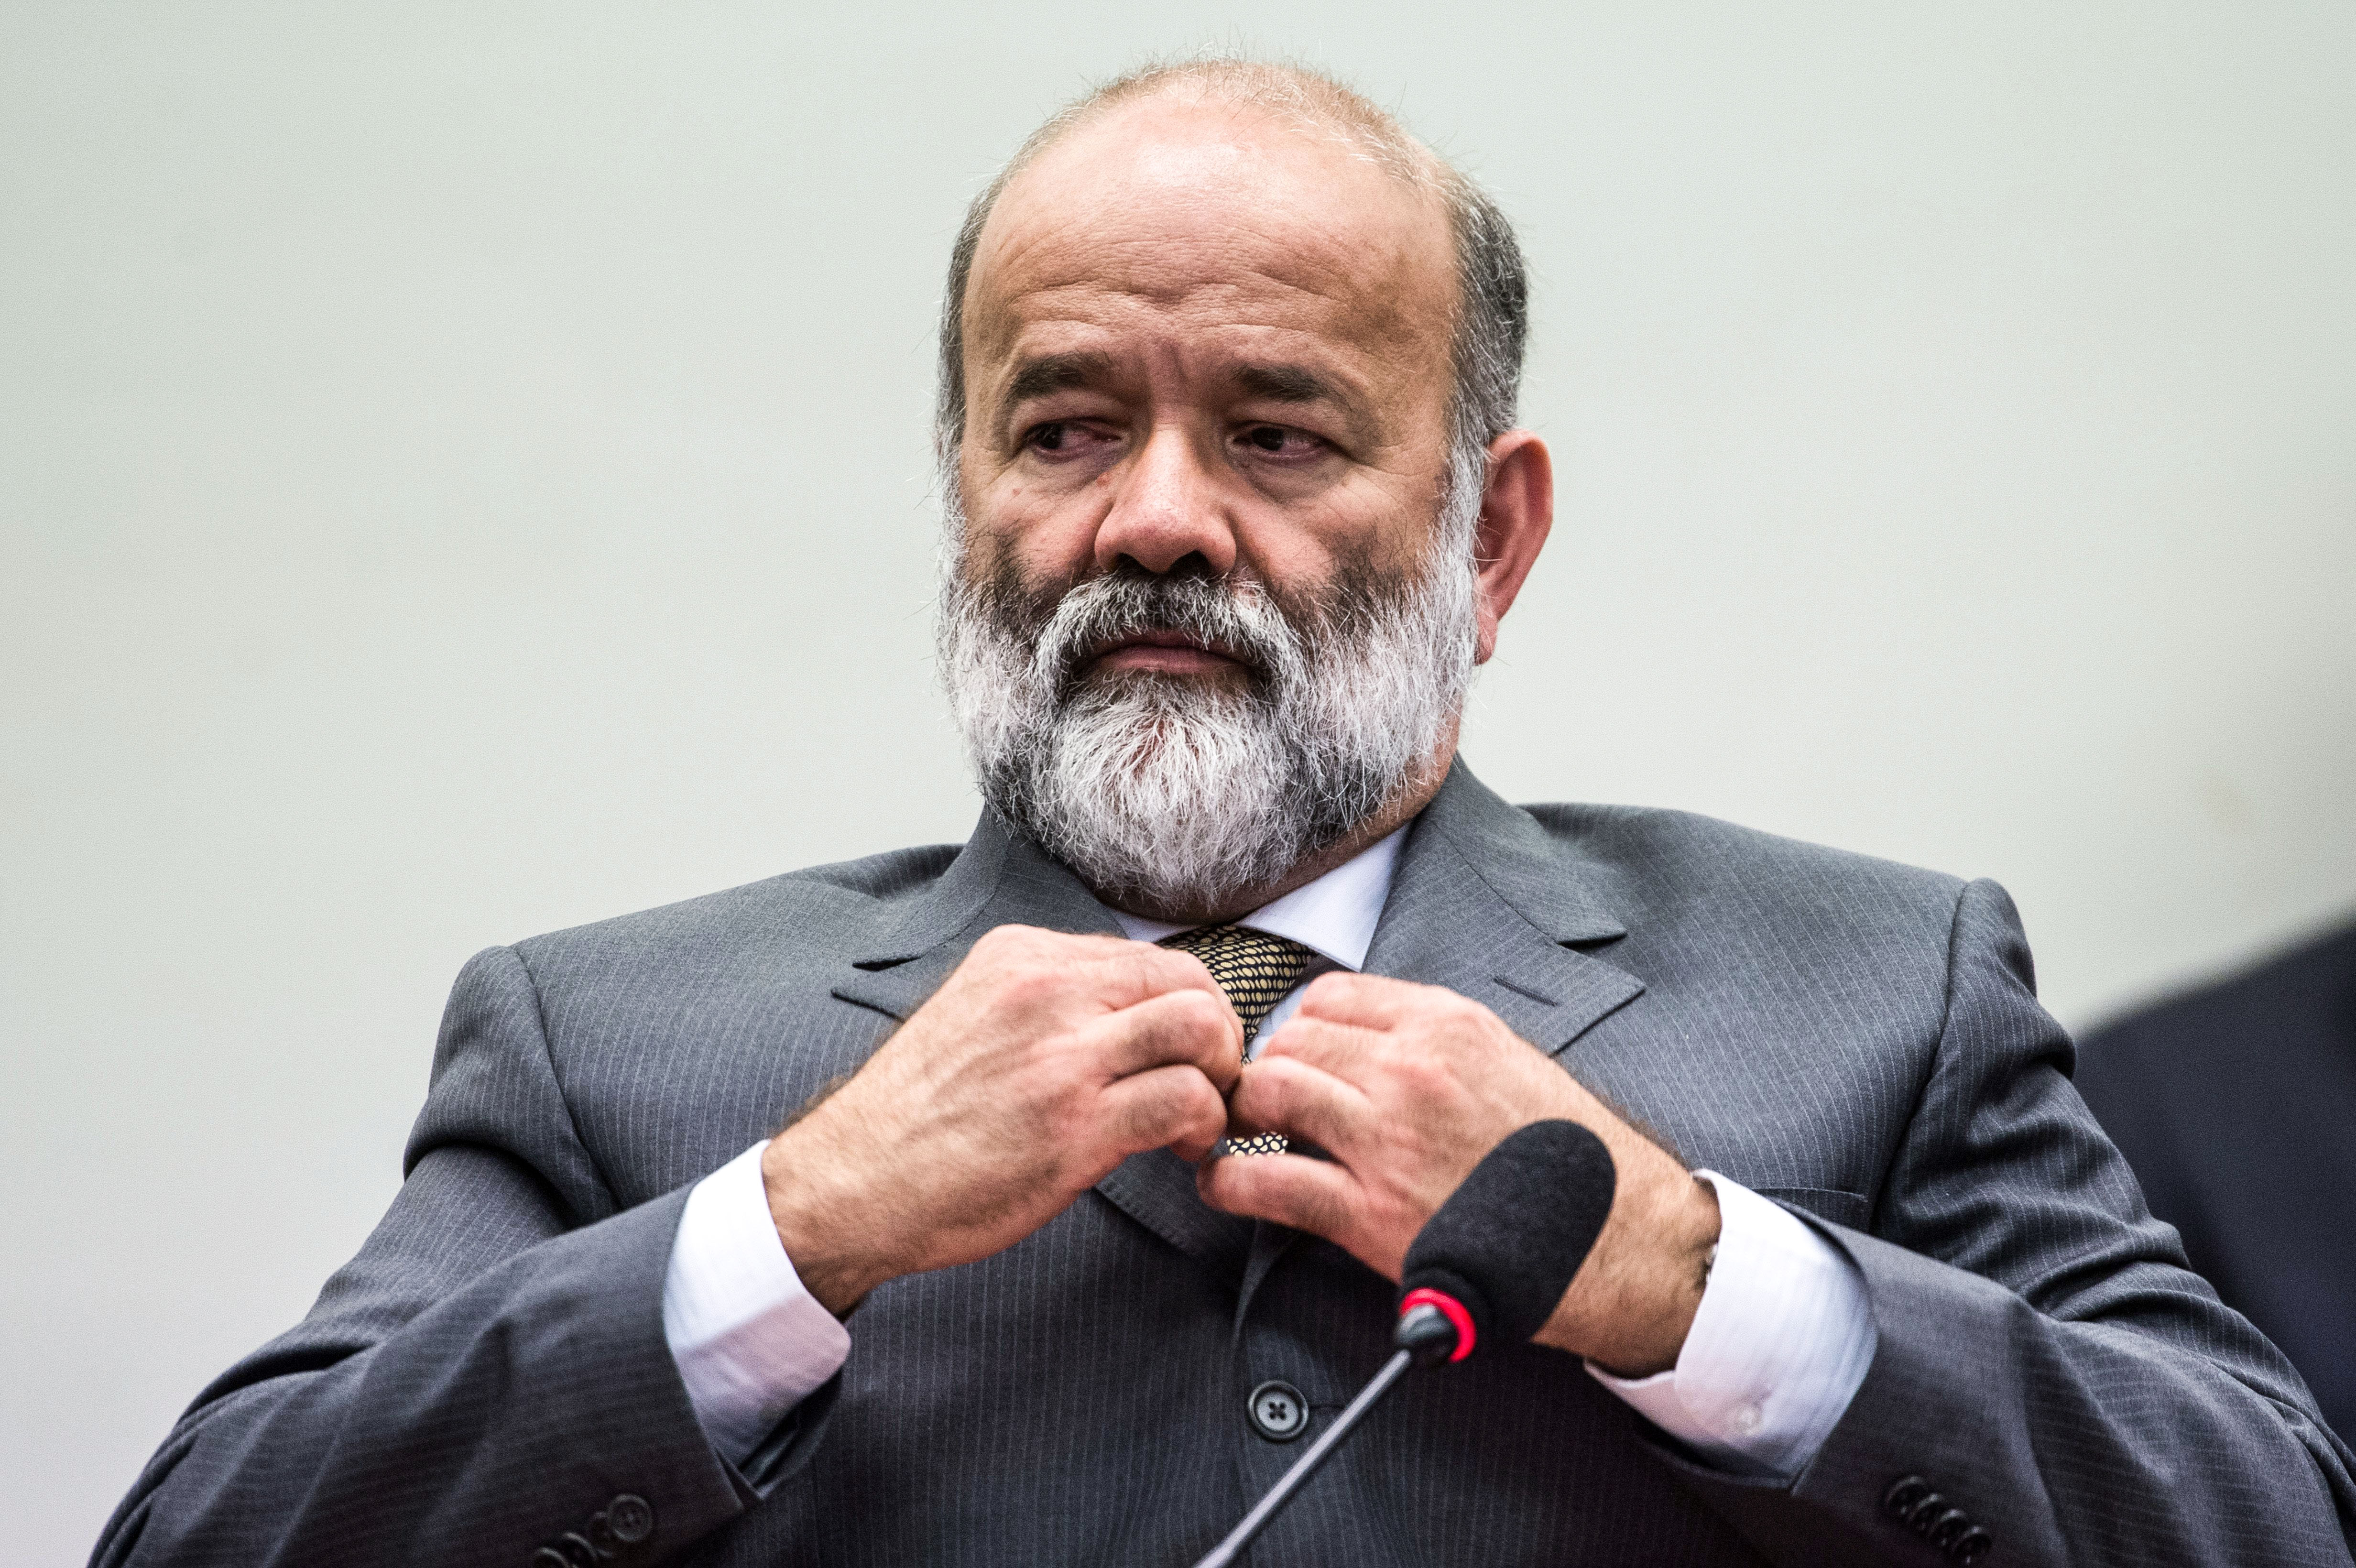  Vaccari Neto, ex-tesoureiro do PT, vira réu por supostas propinas de R$ 3 milhões em contratos da Petrobras